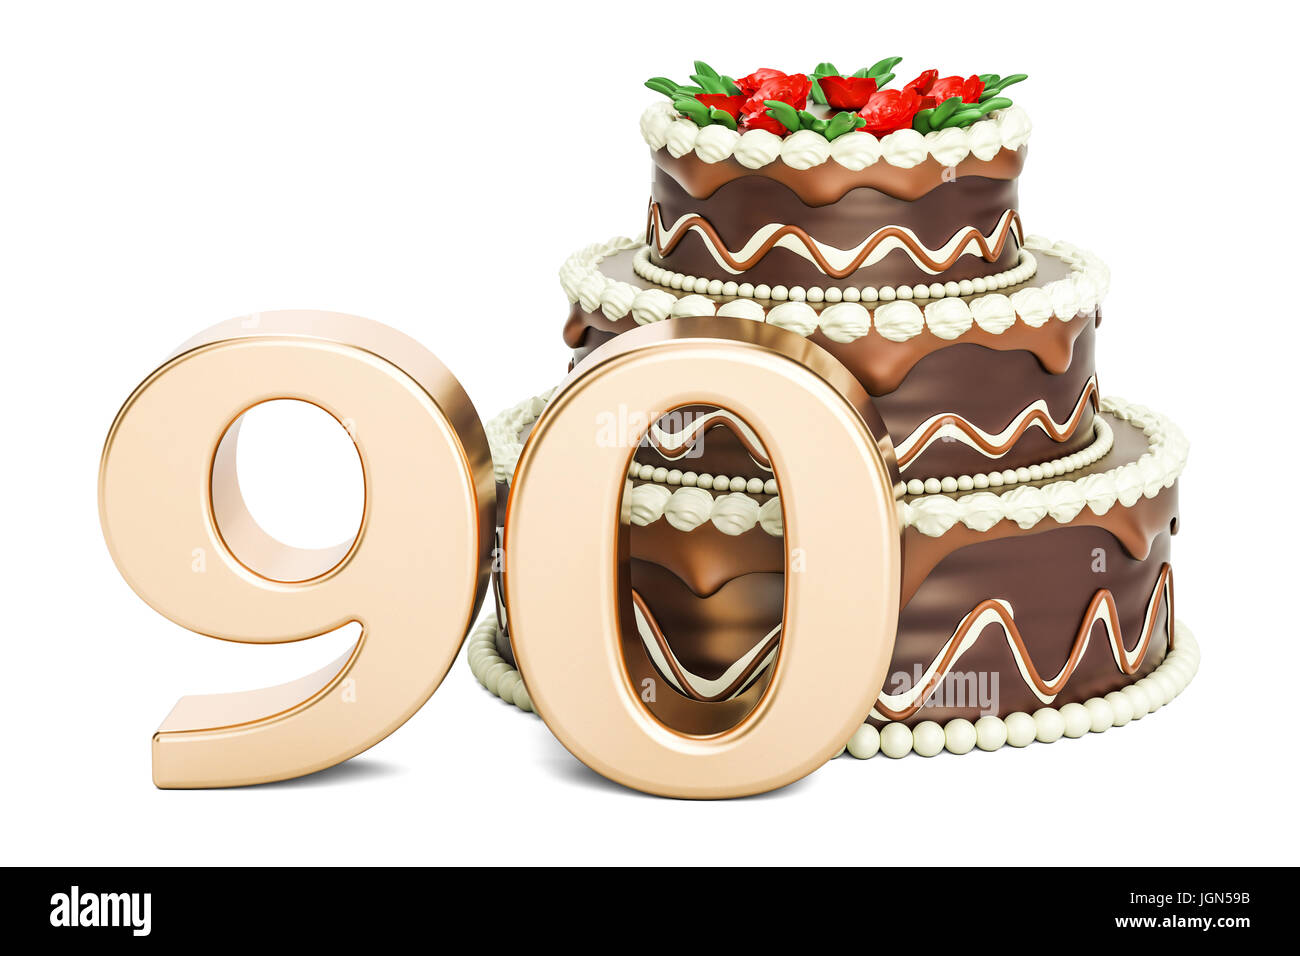 Gâteau au chocolat avec nombre d'or 90, 3D Rendering isolé sur fond blanc Banque D'Images